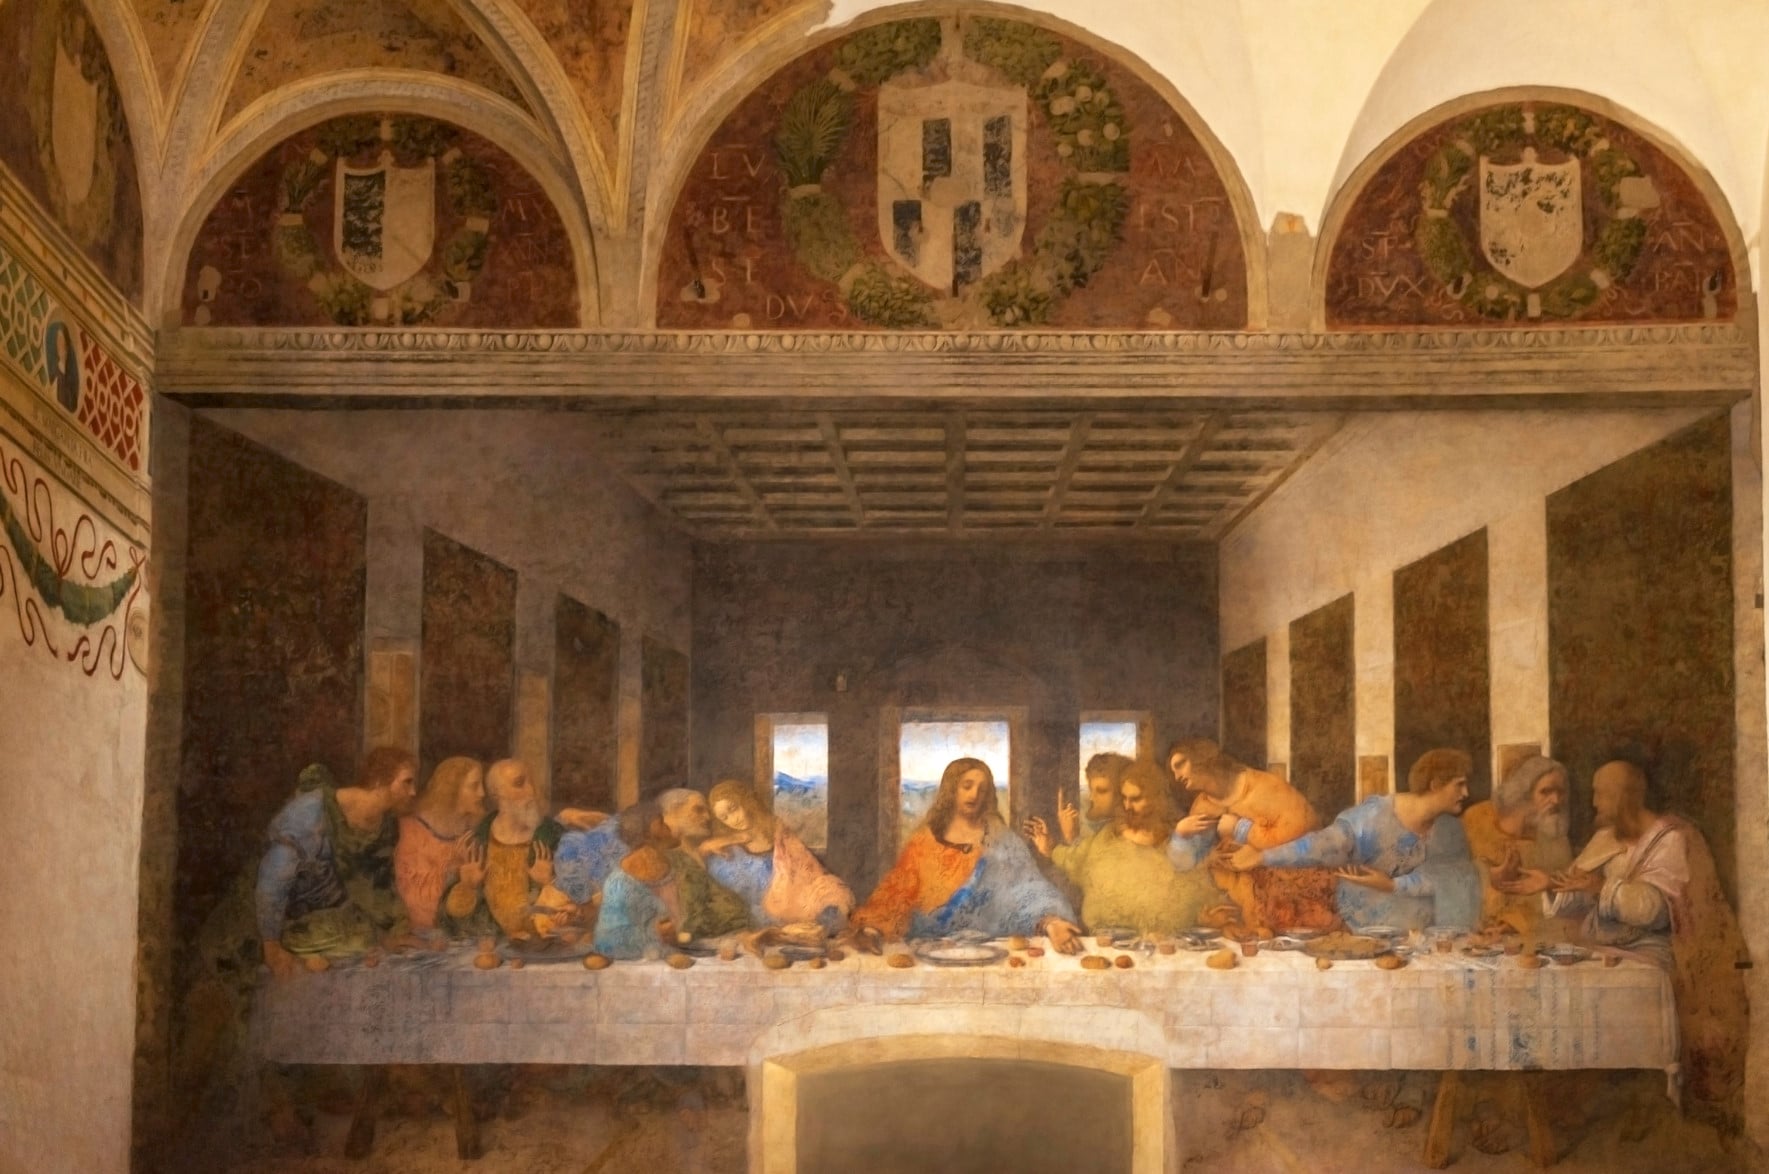 The Last Supper masterpiece by Leonardo da Vinci.